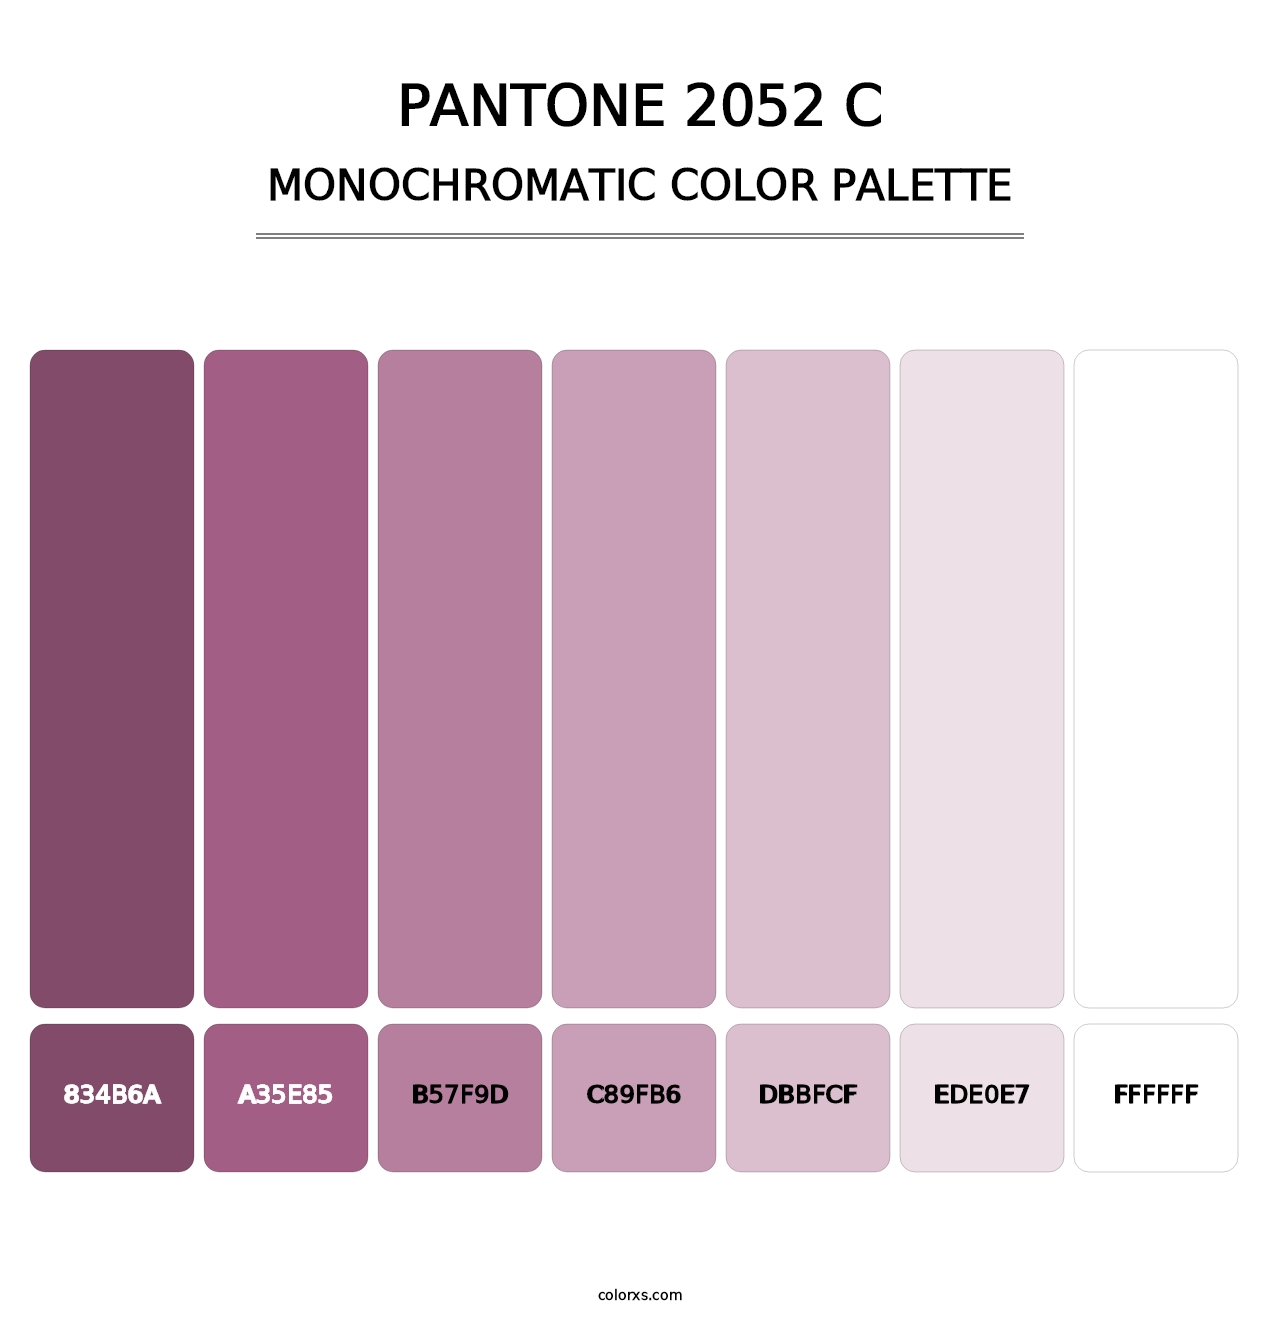 PANTONE 2052 C - Monochromatic Color Palette